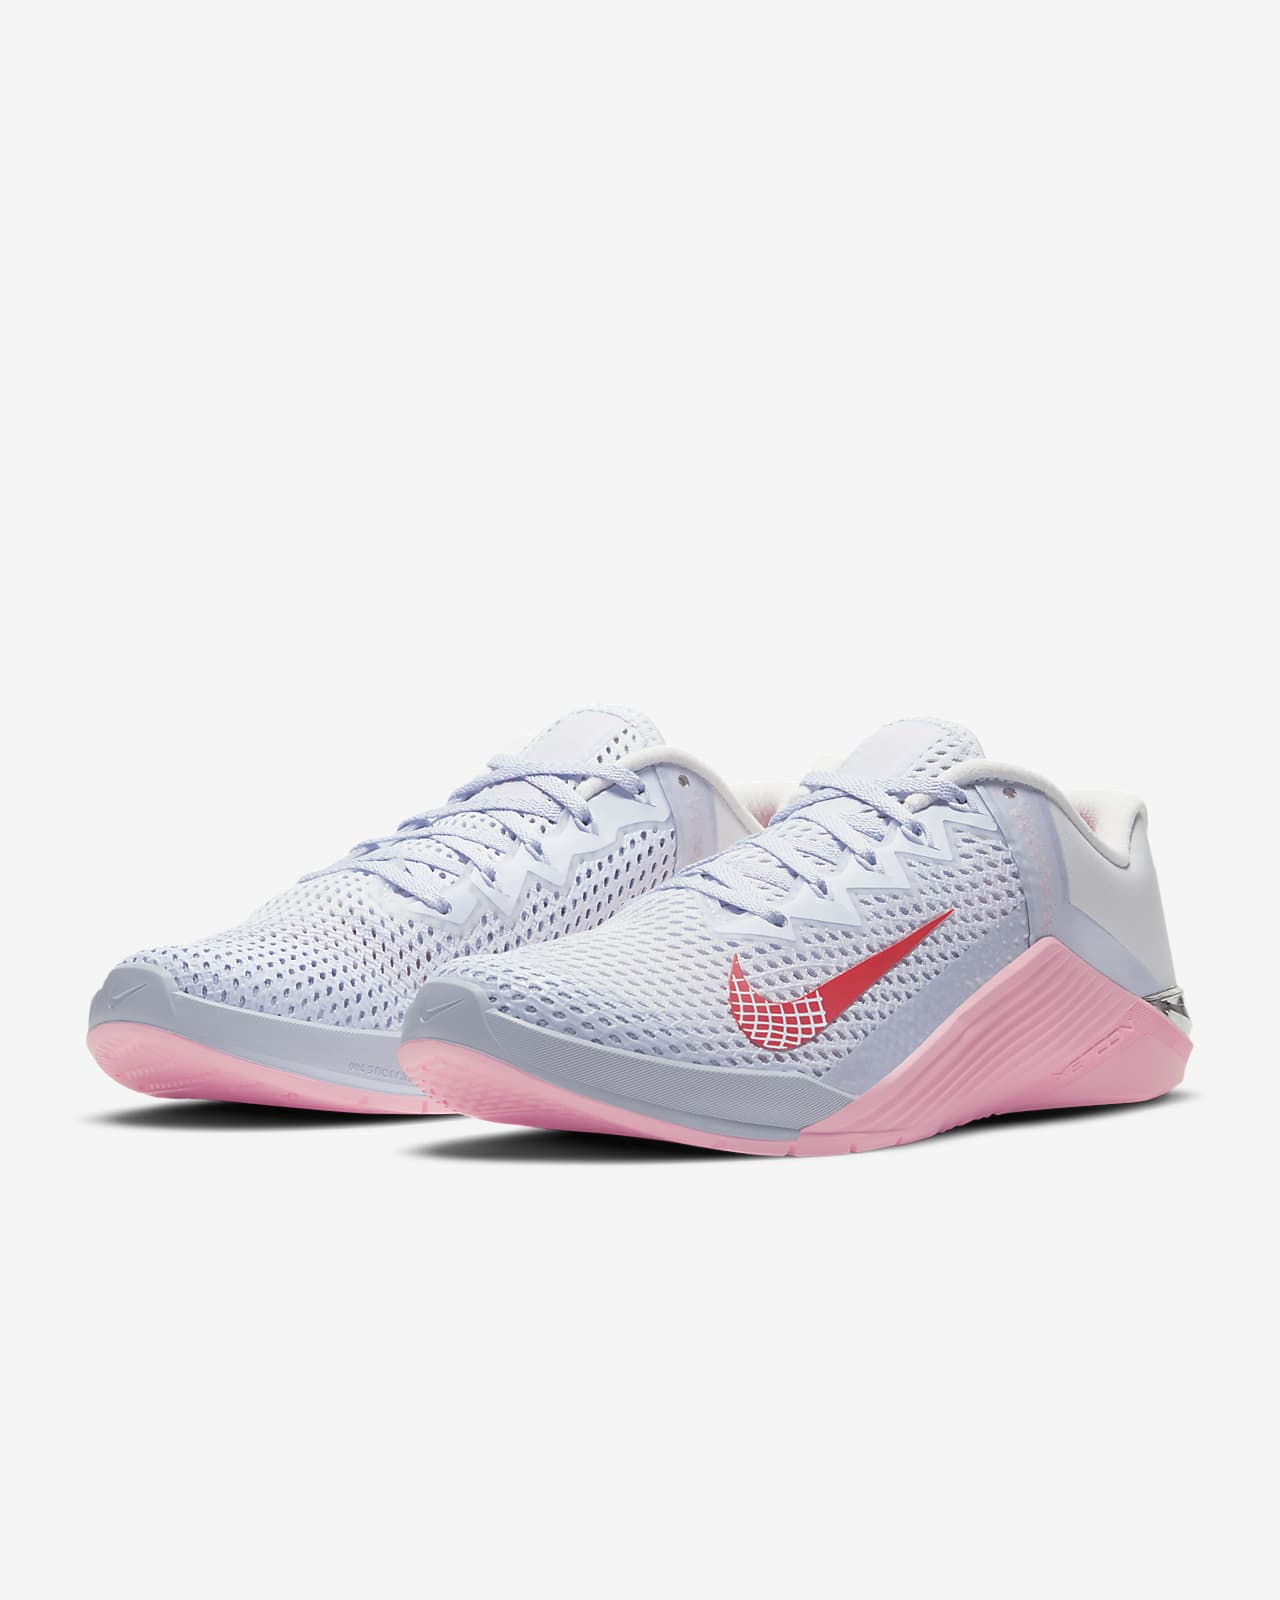 Nike Metcon 6 Women's Training Shoe 